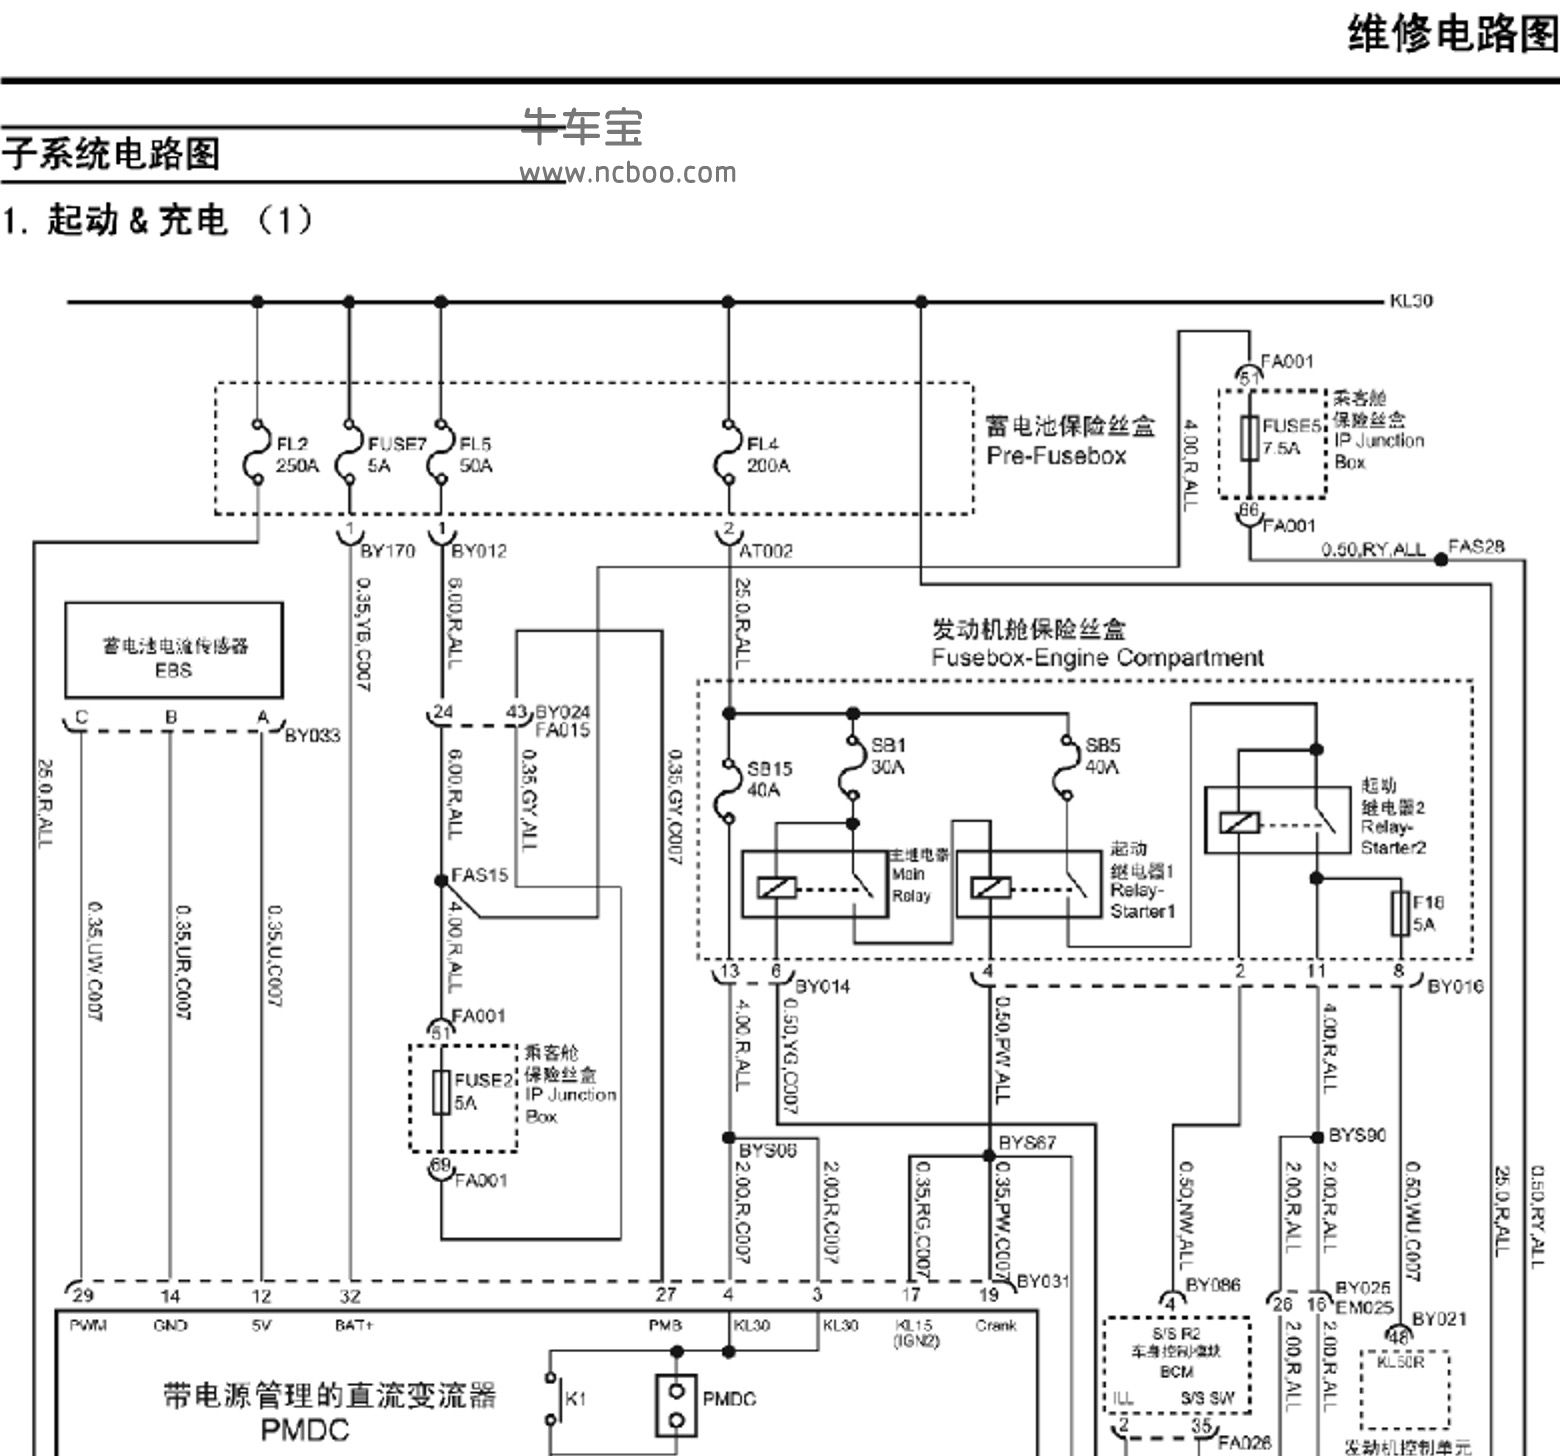 2015款名爵MG GS(锐腾)原厂电路图资料下载